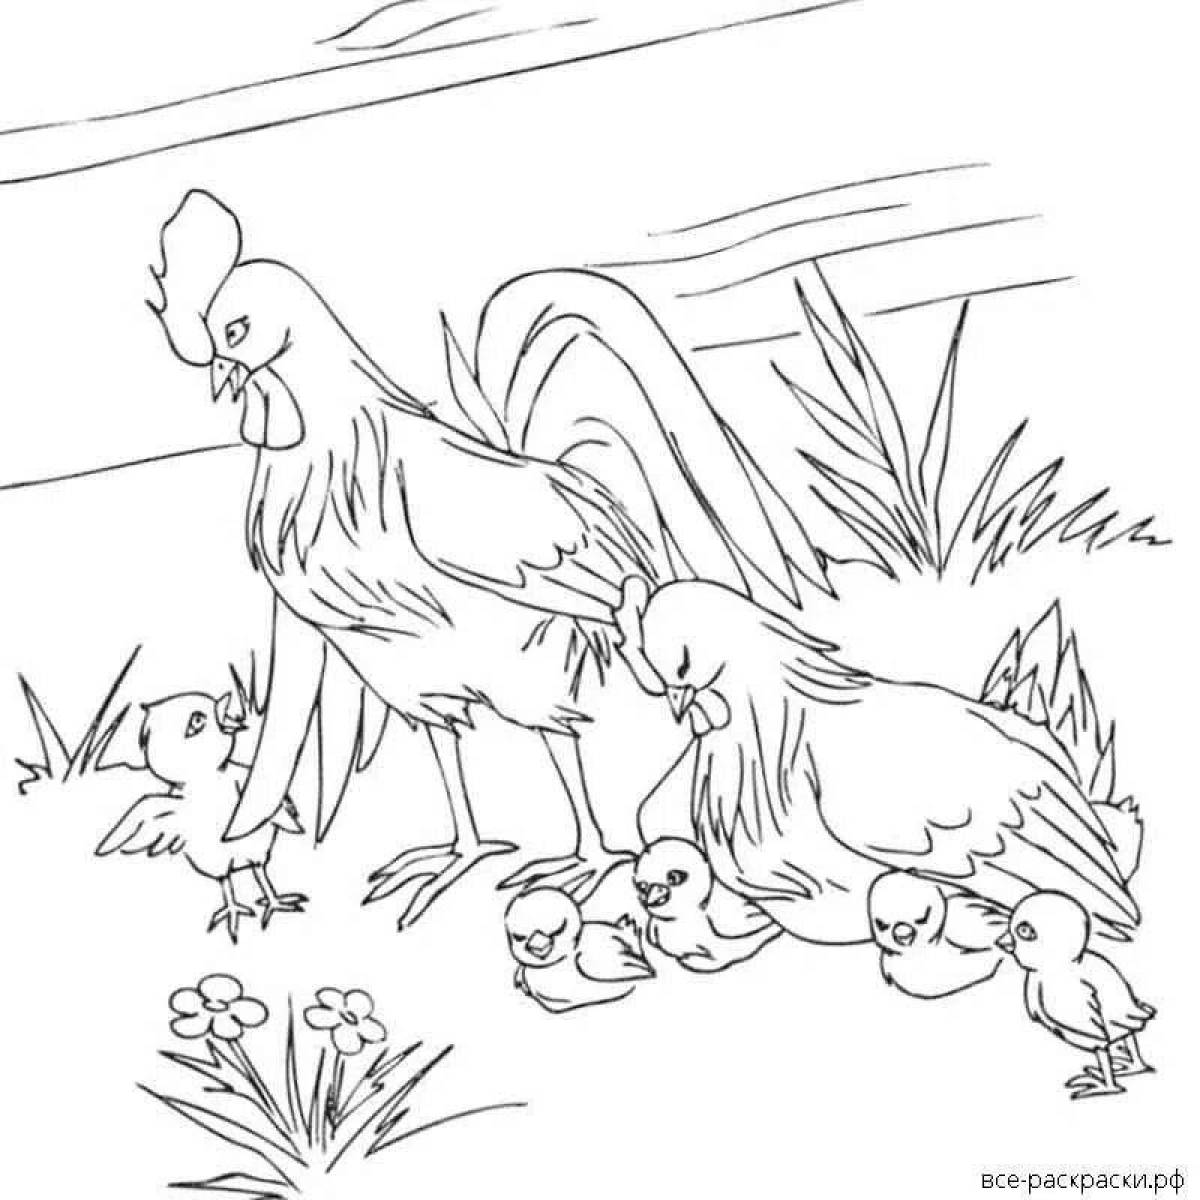 Петух и курица рисунок